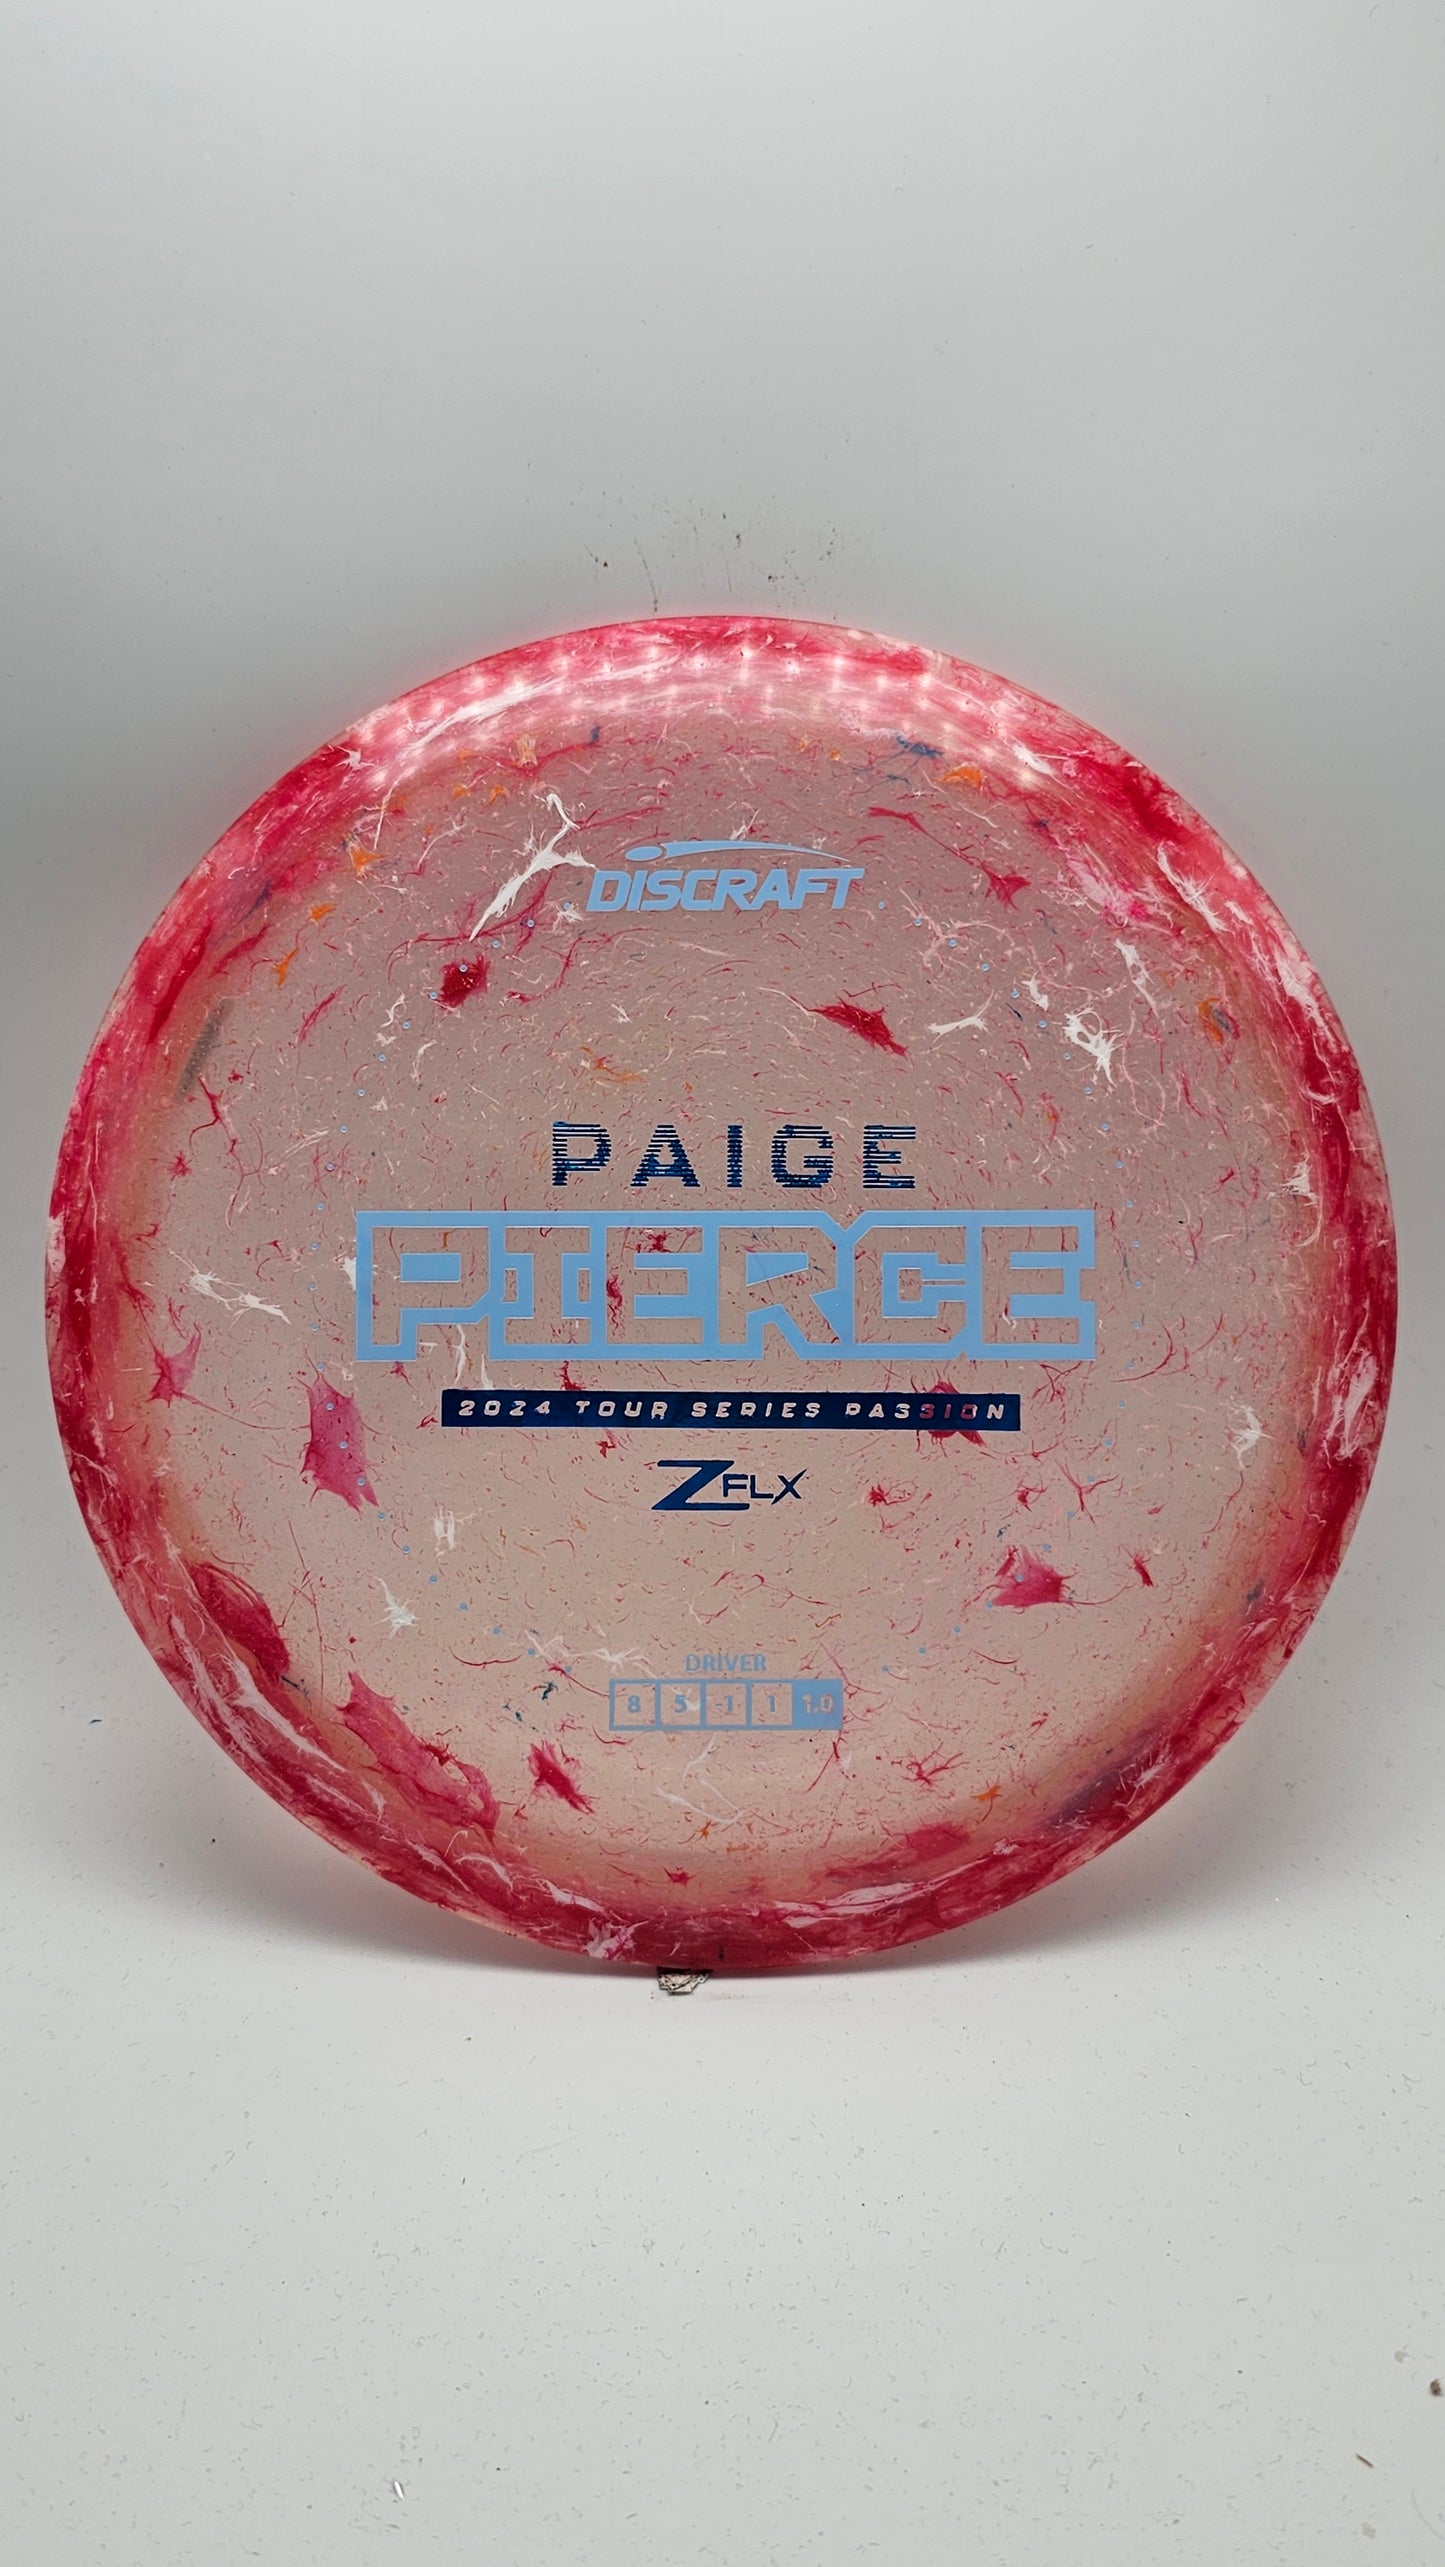 Discraft Paige Pierce Passion - Tour Series 2024